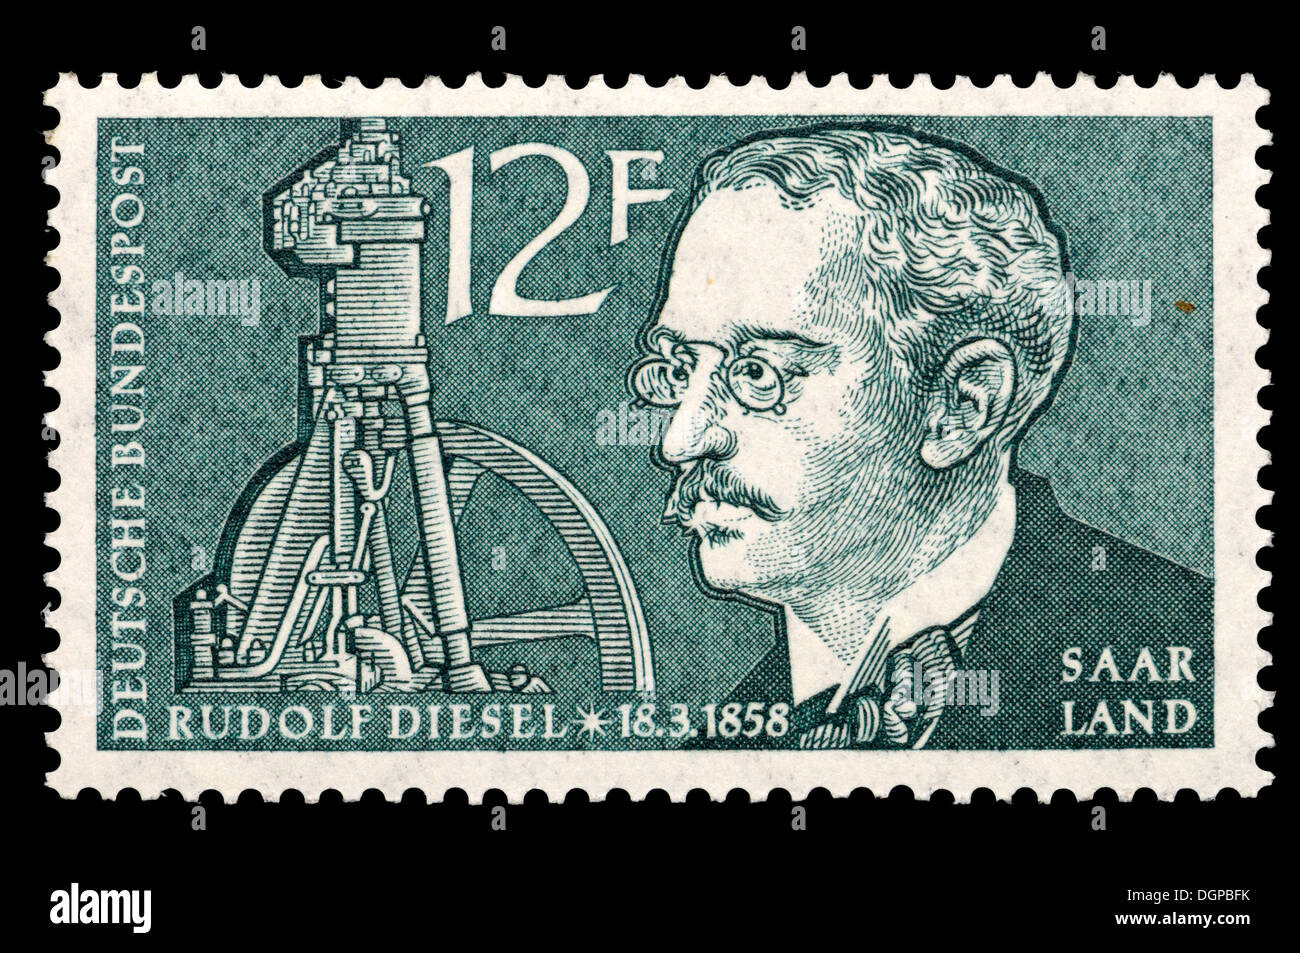 Saarland postage stamp - Rudolf Christian Karl Diesel (1858-1913) German inventor and engineer, inventor of the diesel engine. Stock Photo